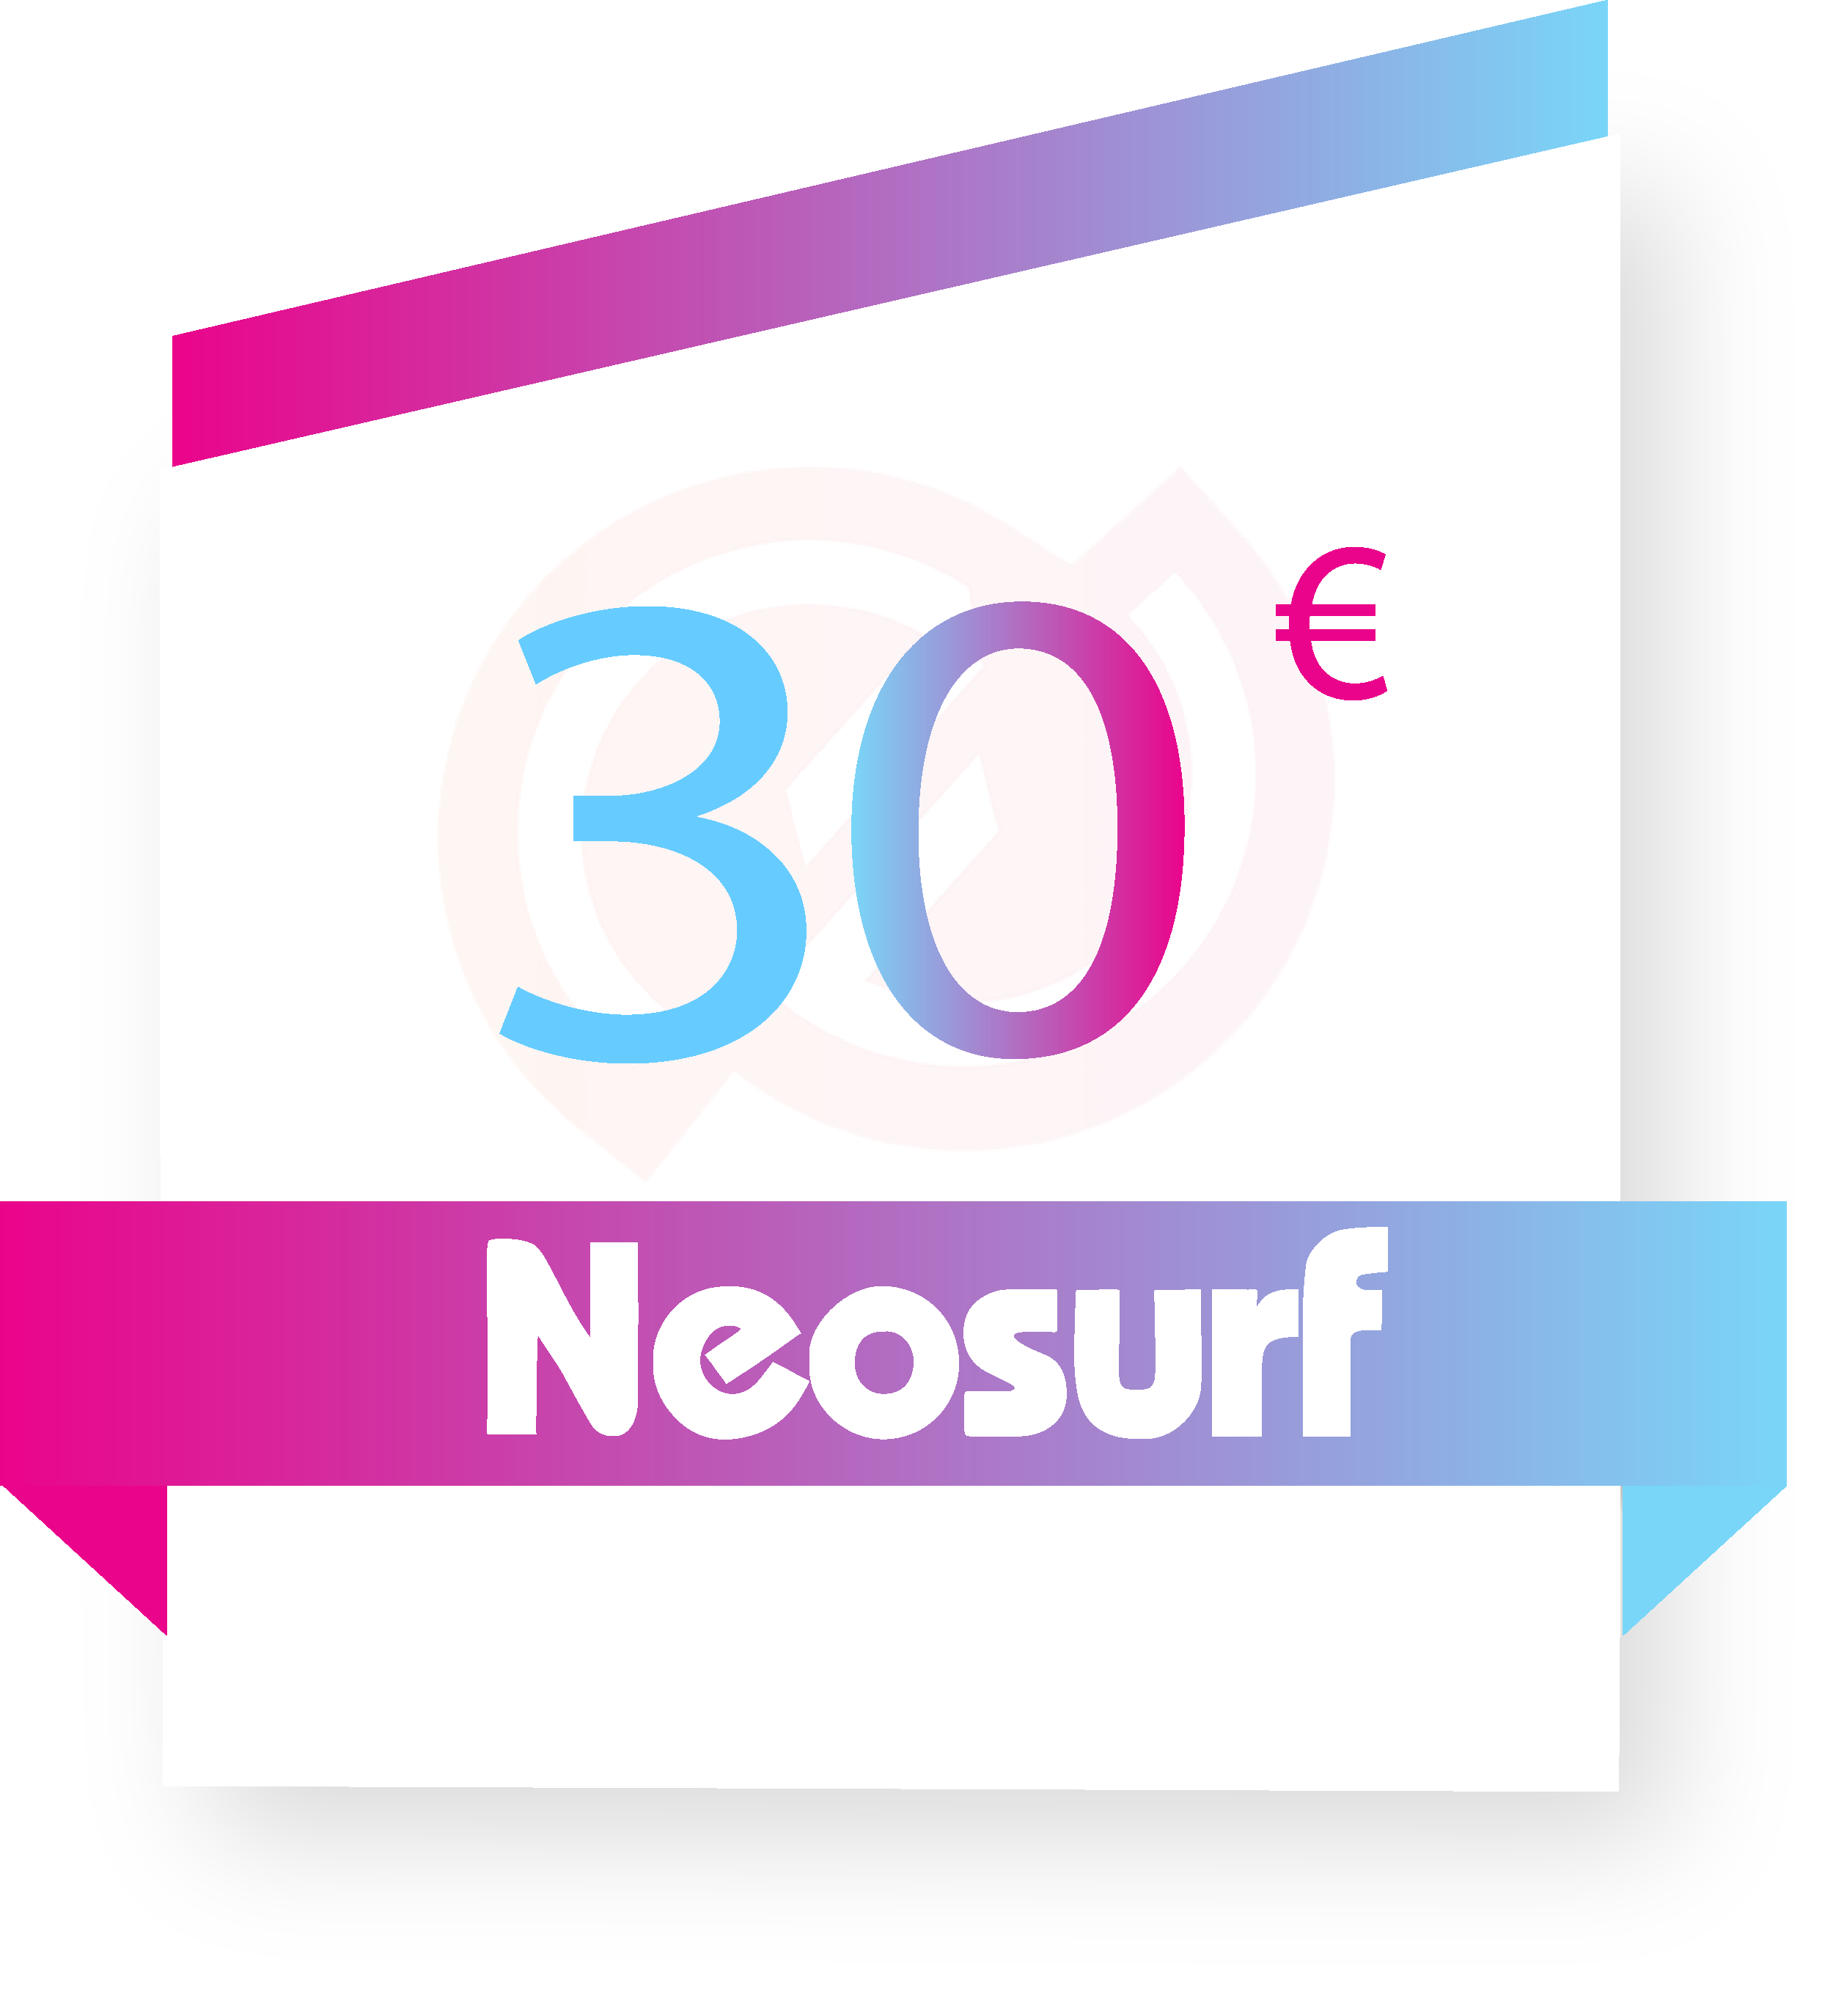 Acheter Neosurf 30 €  Recharge en ligne 7j/7 - BirdPass